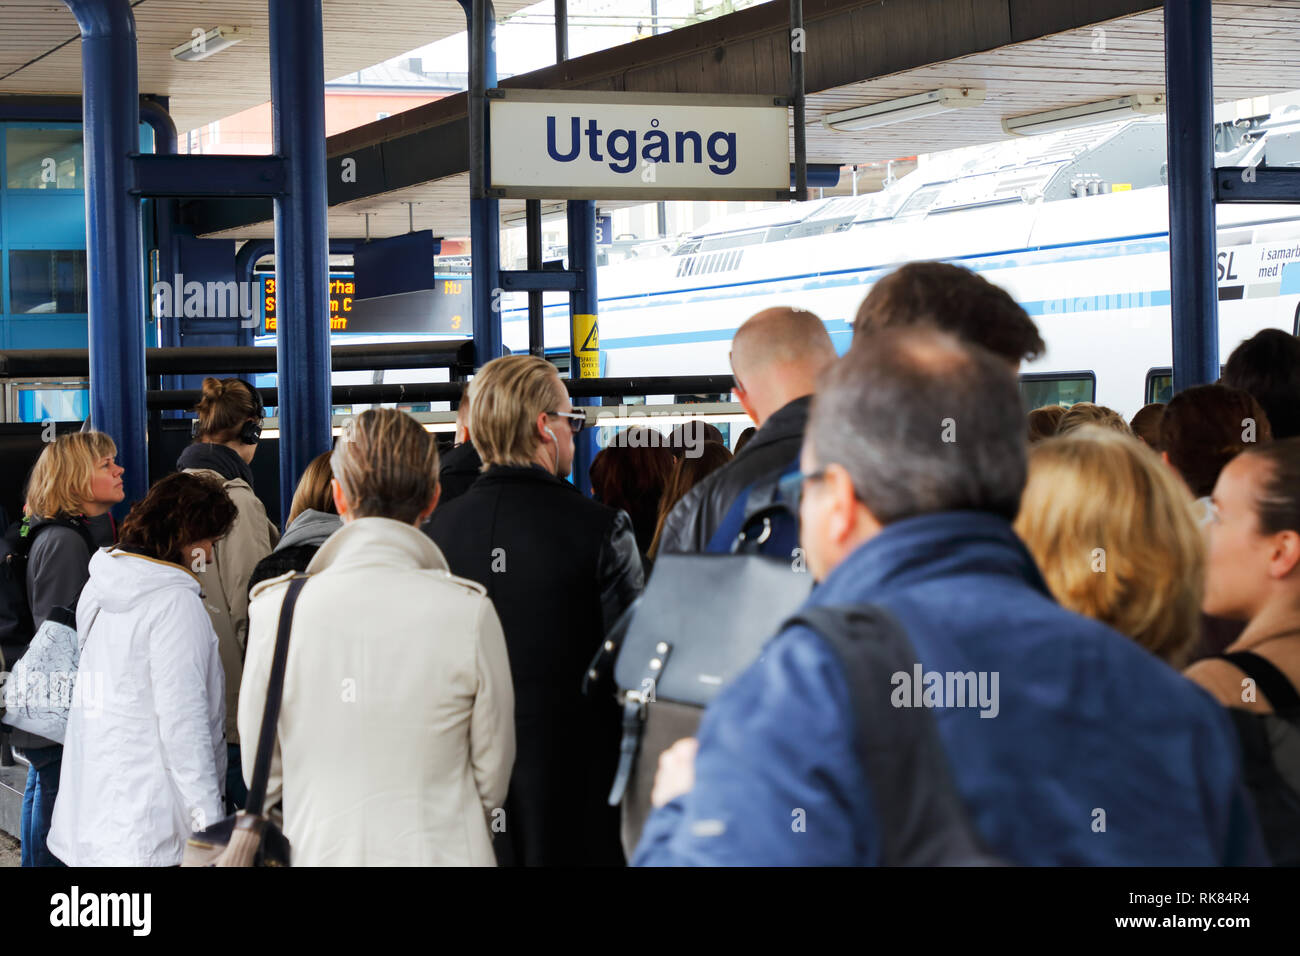 Sundbyberg, Svezia - 18 Maggio 2017: i passeggeri è arrivata con un treno dei pendolari alla stazione Sunbyberg ed esce dalla piattaforma. Foto Stock